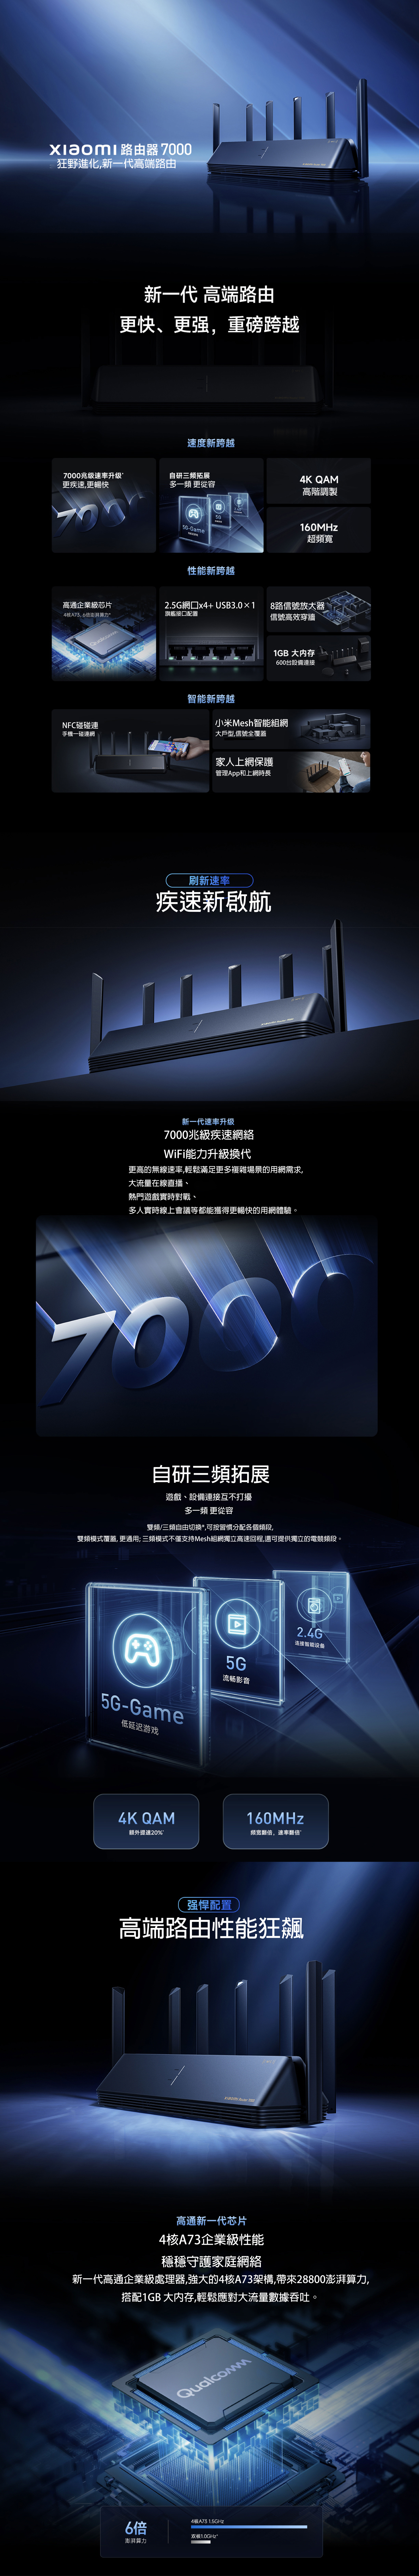 Xiaomi Router 7000